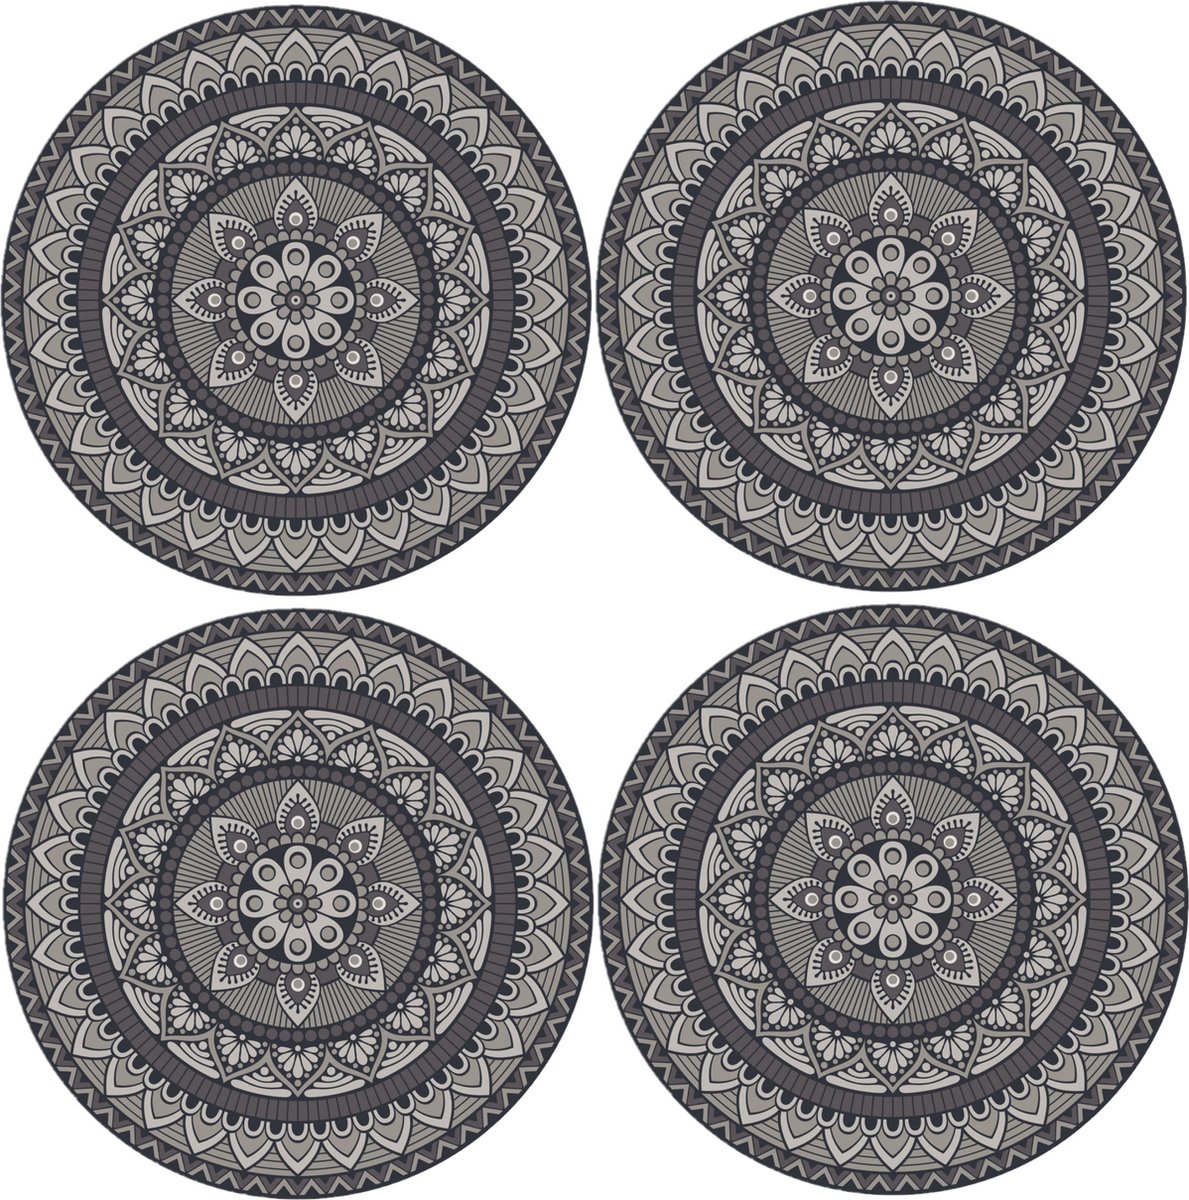 8x stuks mandela stijl ronde grijze placemats van vinyl D38 cm - Antislip/waterafstotend - Stevige top kwaliteit